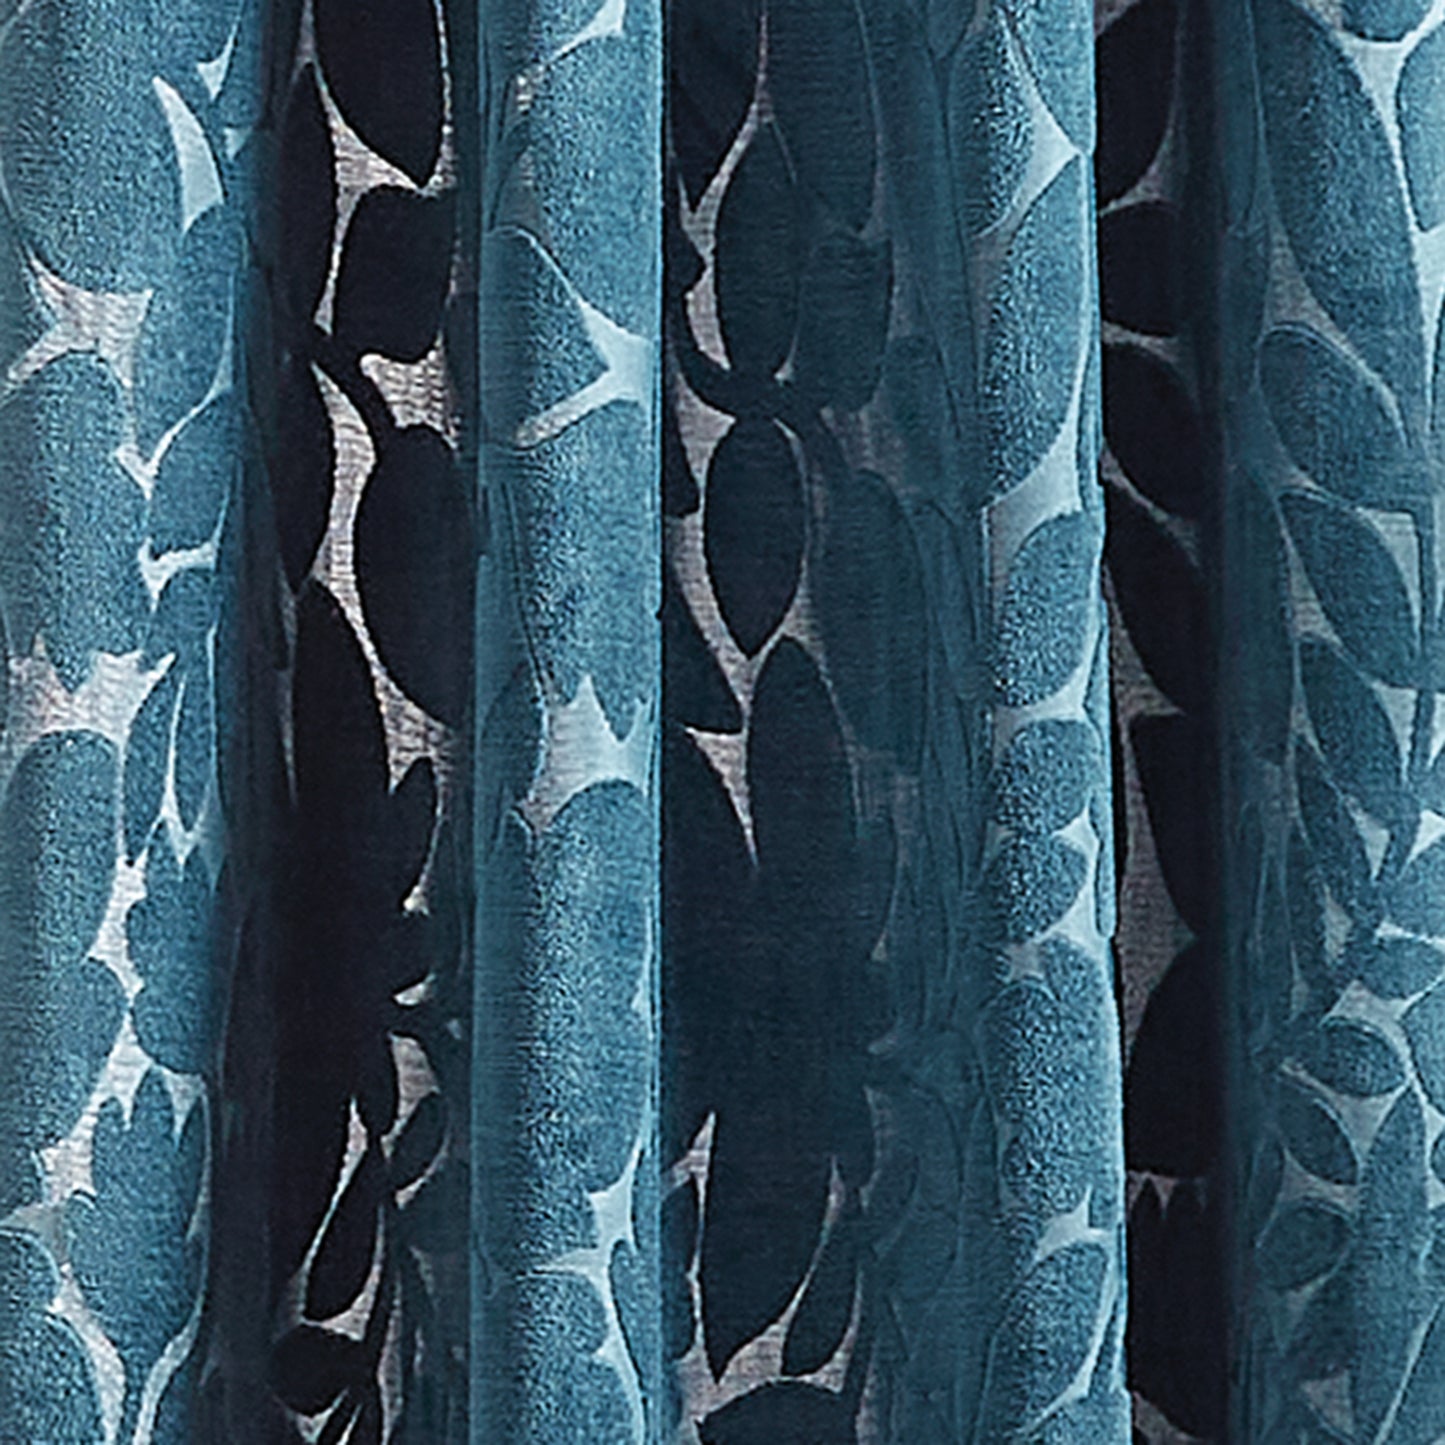 Martha Stewart Sherwood Velvet Curtain Panel